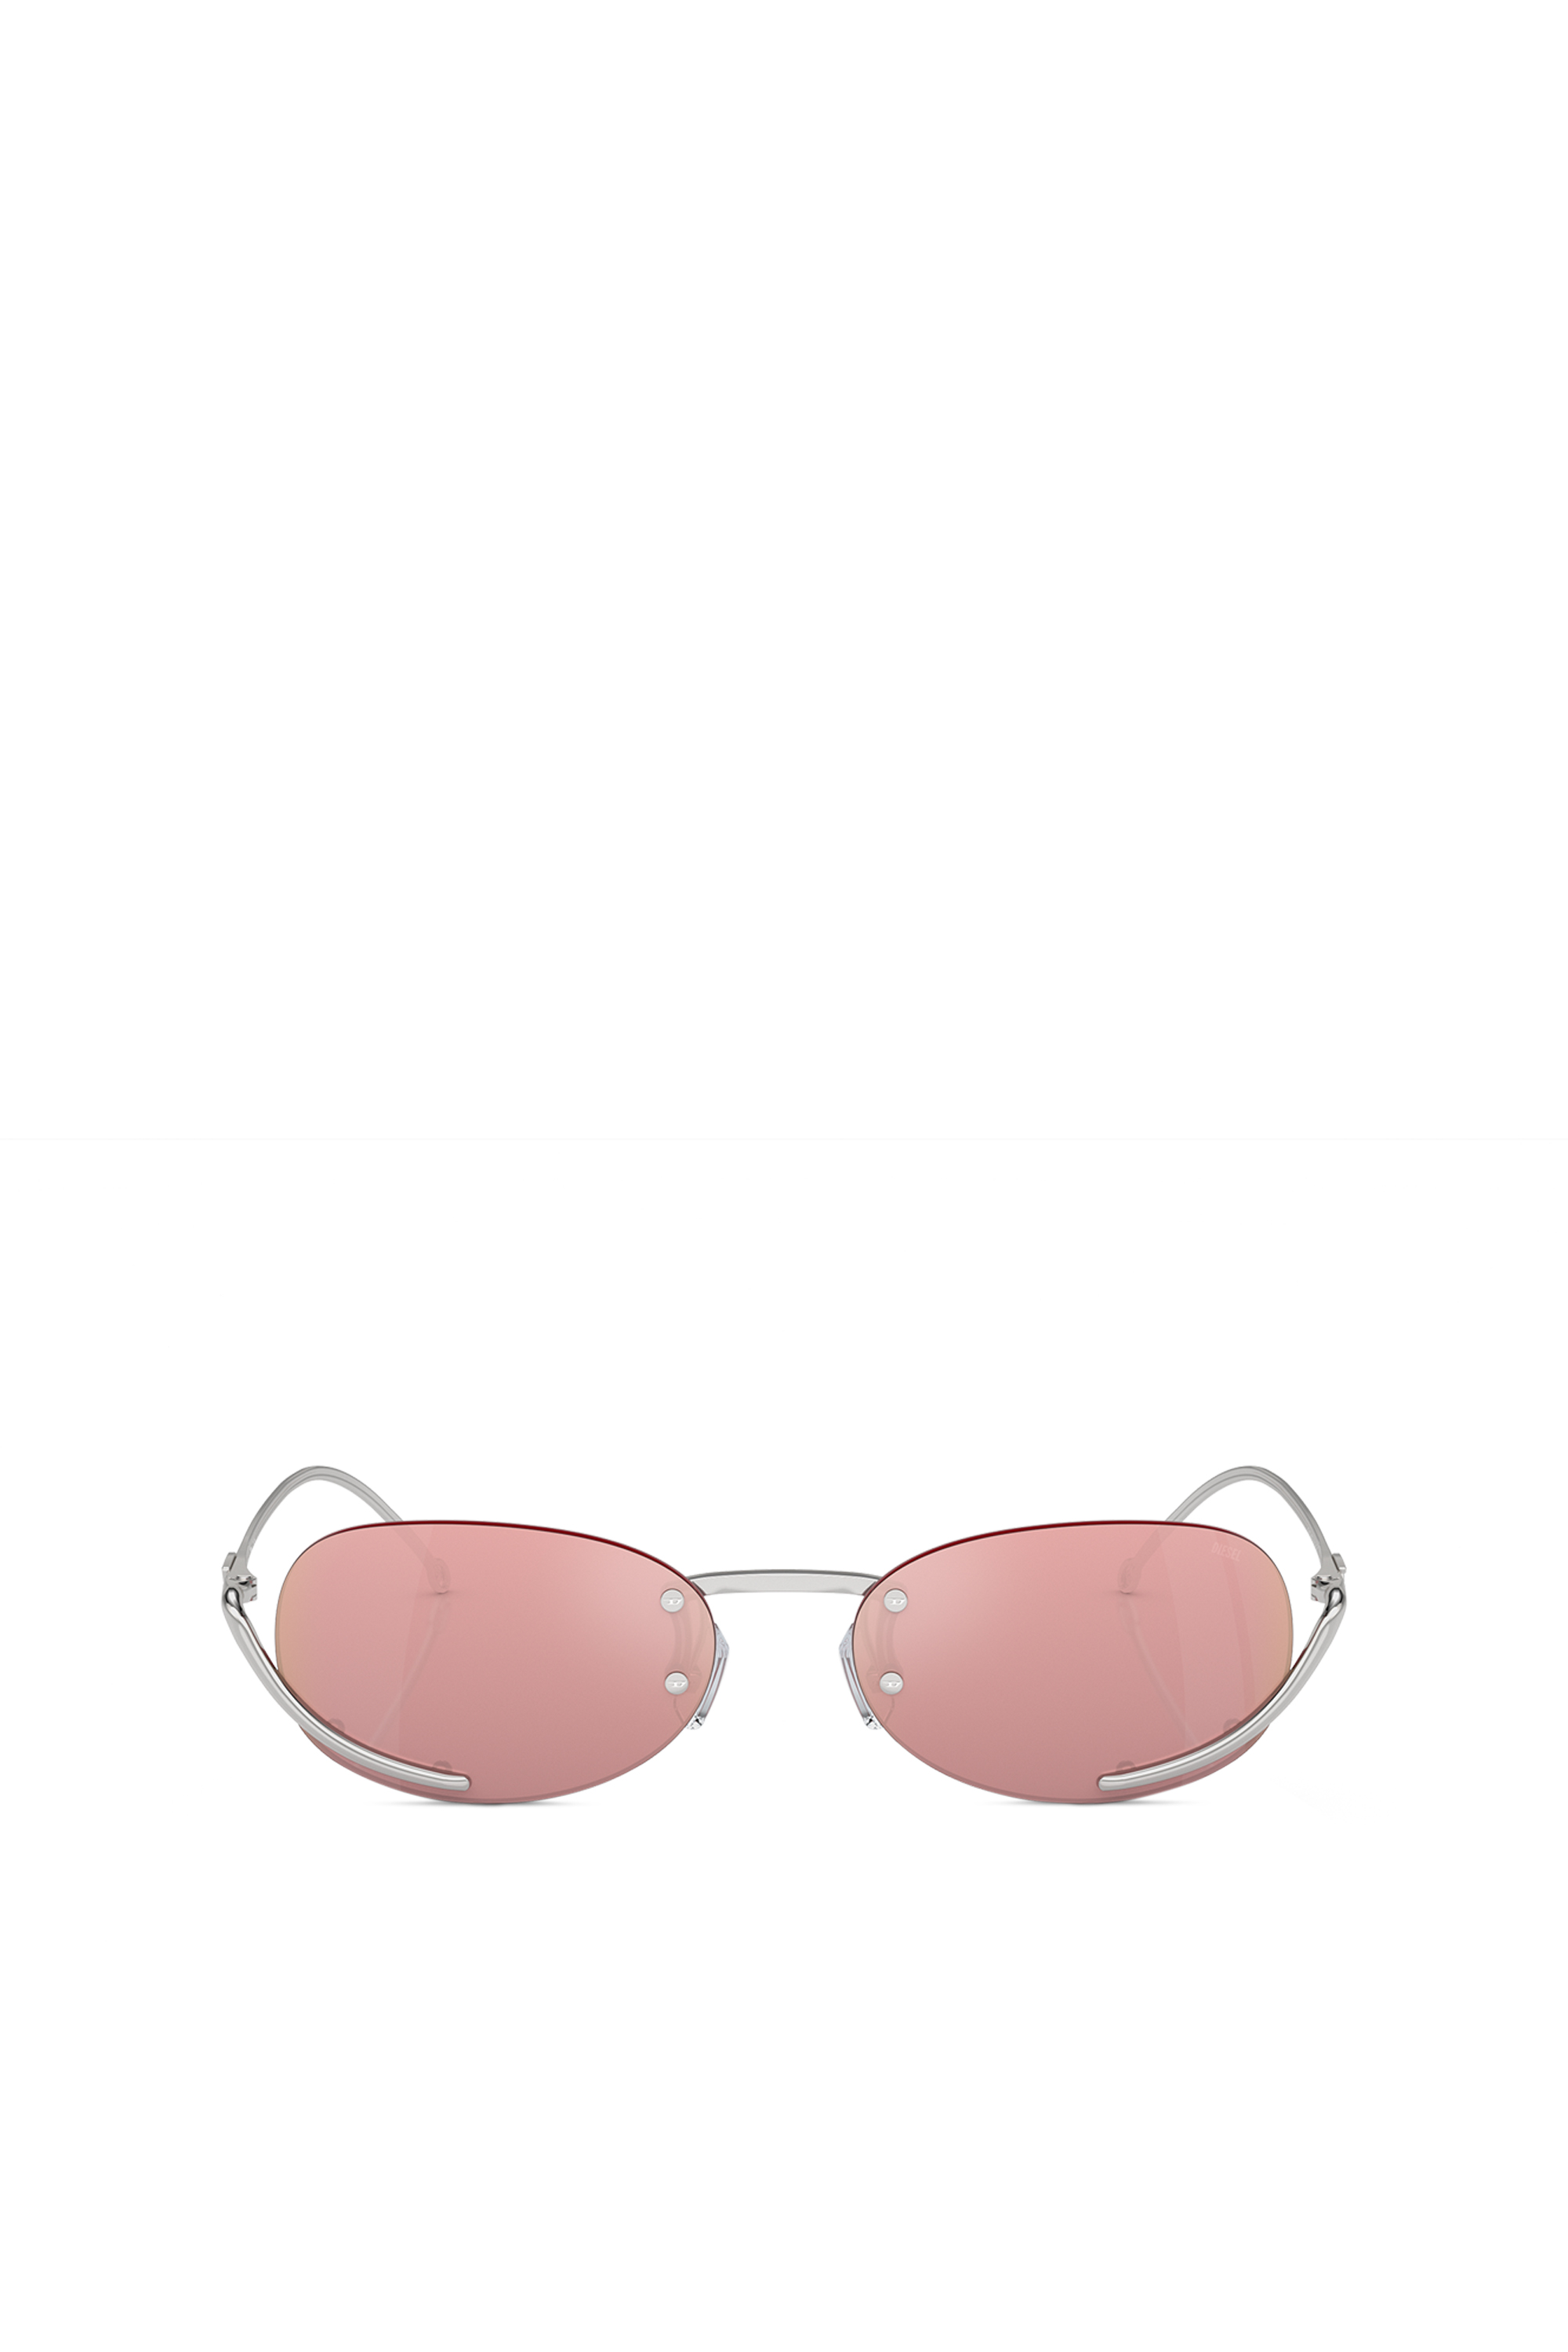 Diesel - Ovaler Modell Brille - Sonnenbrille - Unisex - Rosa